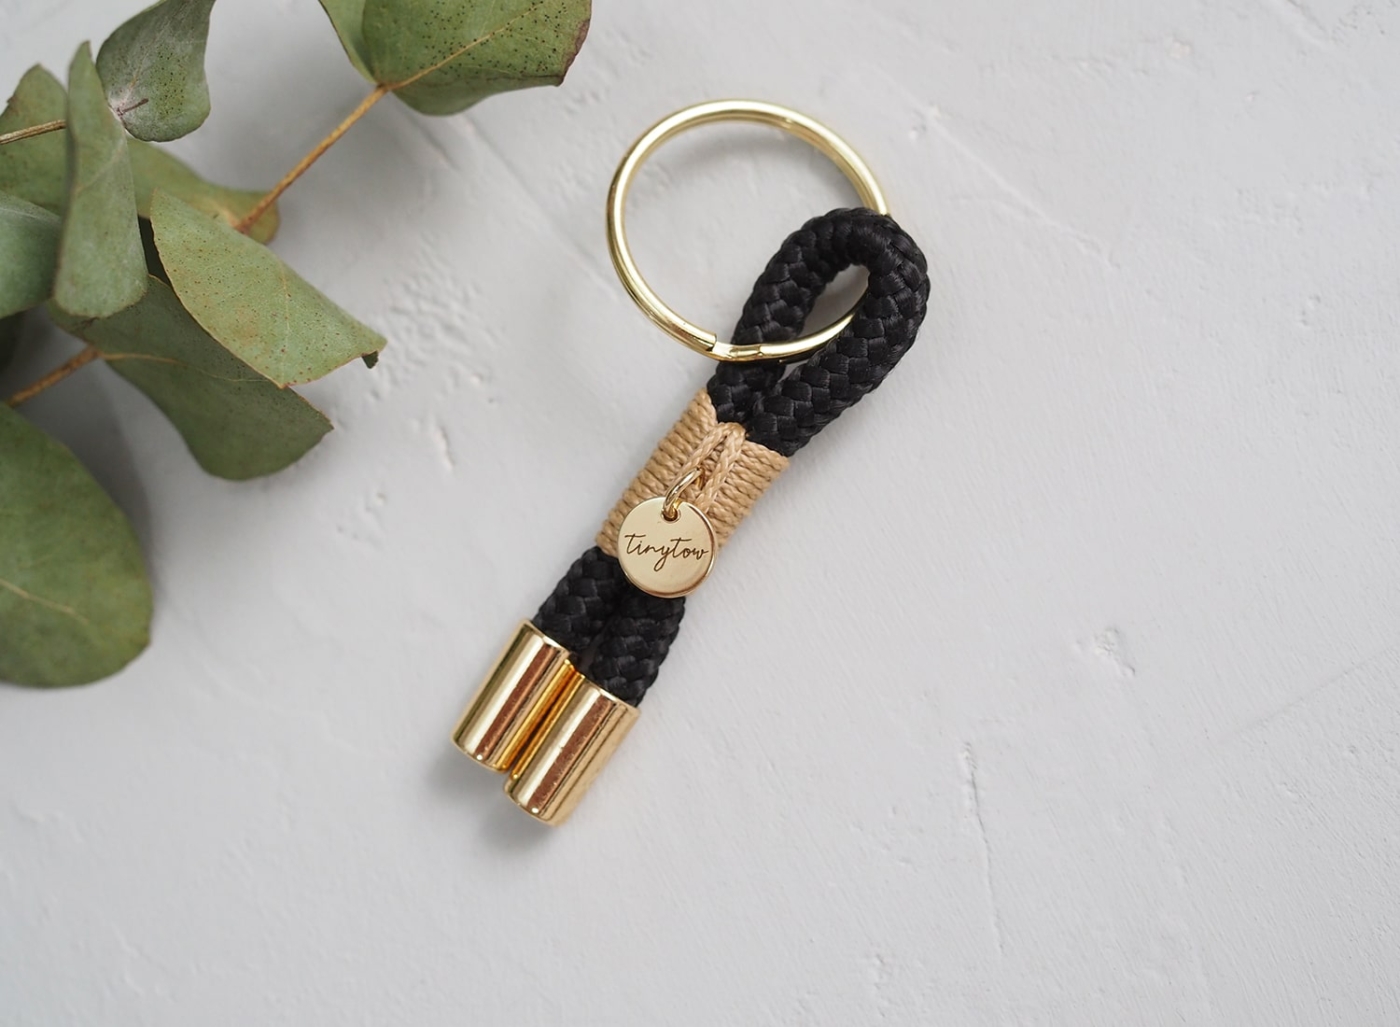 Schlüsselanhänger aus schwarzem Tauseil mit beigefarbenen Details und goldenem Schlüsselring.